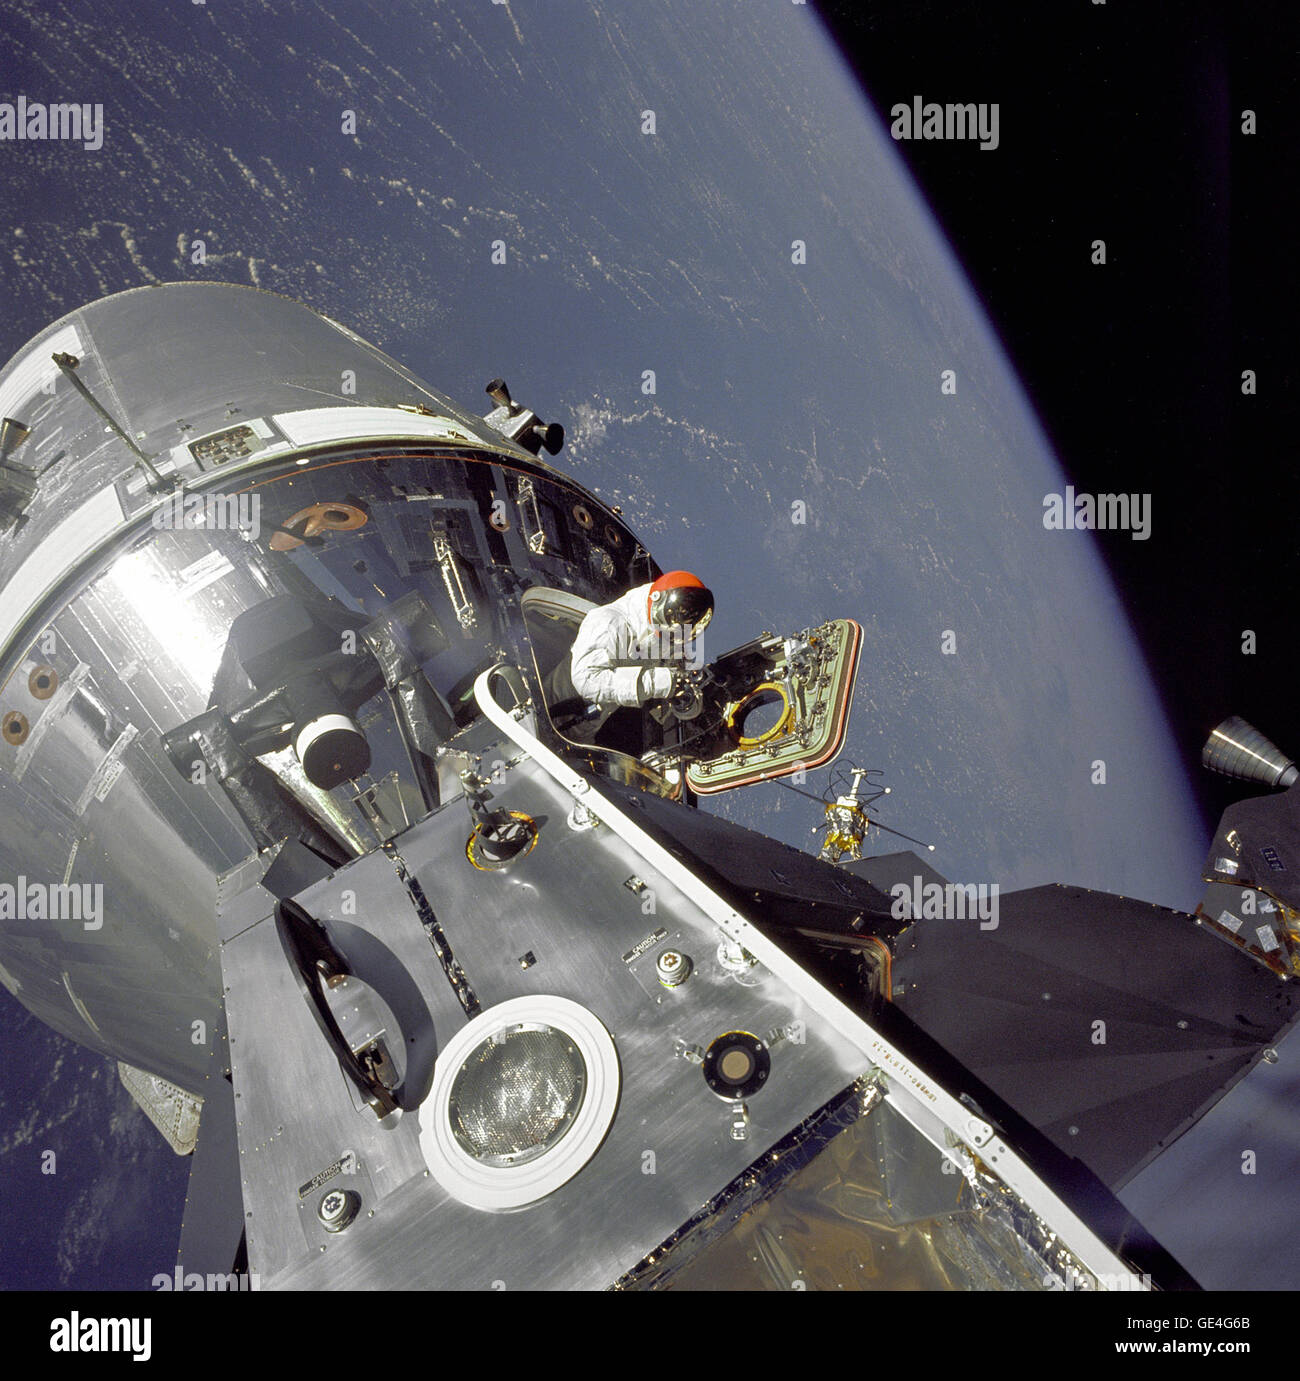 (6 März 1969) Apollo 9 Command/Service Module (CSM) den Spitznamen "Gummibonbon" und der Mondlandefähre (LM), den Spitznamen "Spider" angedockten zusammen als Monitorbox pilot David in die offene Luke steht dargestellt sind. Astronaut Russell L. Schweickart, Pilot der Mondlandefähre, nahm dieses Foto von Scott während seiner EVA, als er auf der Veranda außerhalb der Mondfähre Stand. Apollo 9 war eine Erde orbitale Mission Docking-Verfahren zwischen dem CSM und LM sowie Fly Test der Mondlandefähre in den relativen sicheren Grenzen der Erdumlaufbahn testen sollen.   Bild-Nr.: AS9-20-3064 Stockfoto